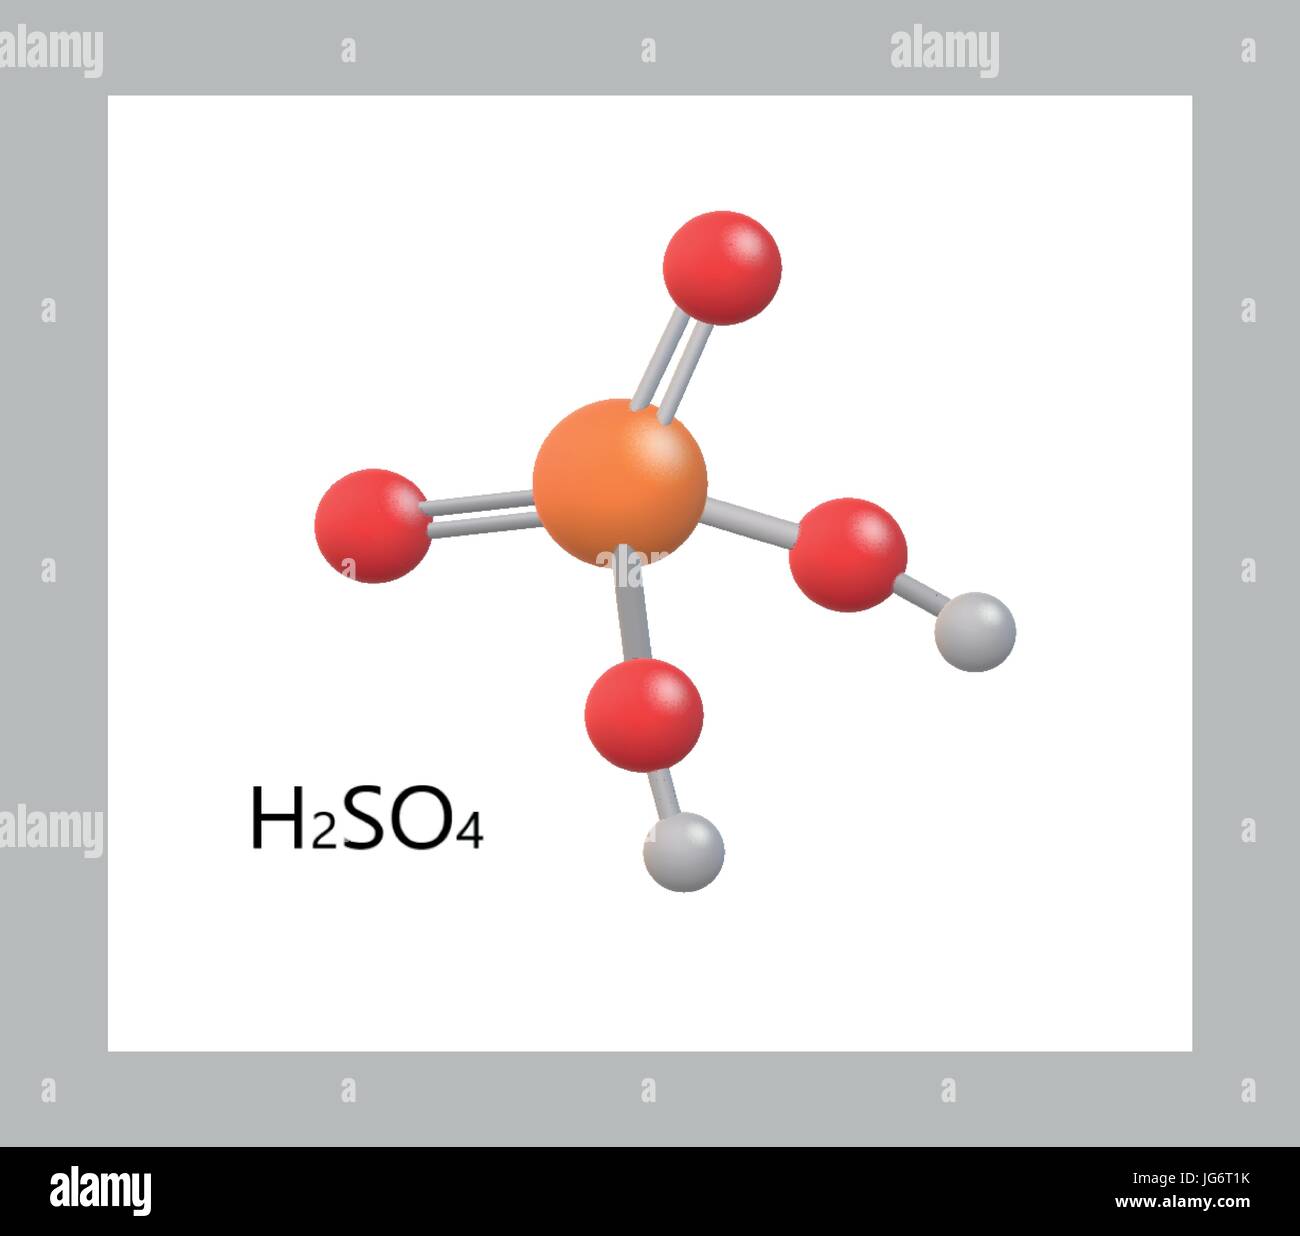 H2SO4 molécule modèle d'acide sulfurique, l'acide minéral fort hautement corrosif Illustration de Vecteur